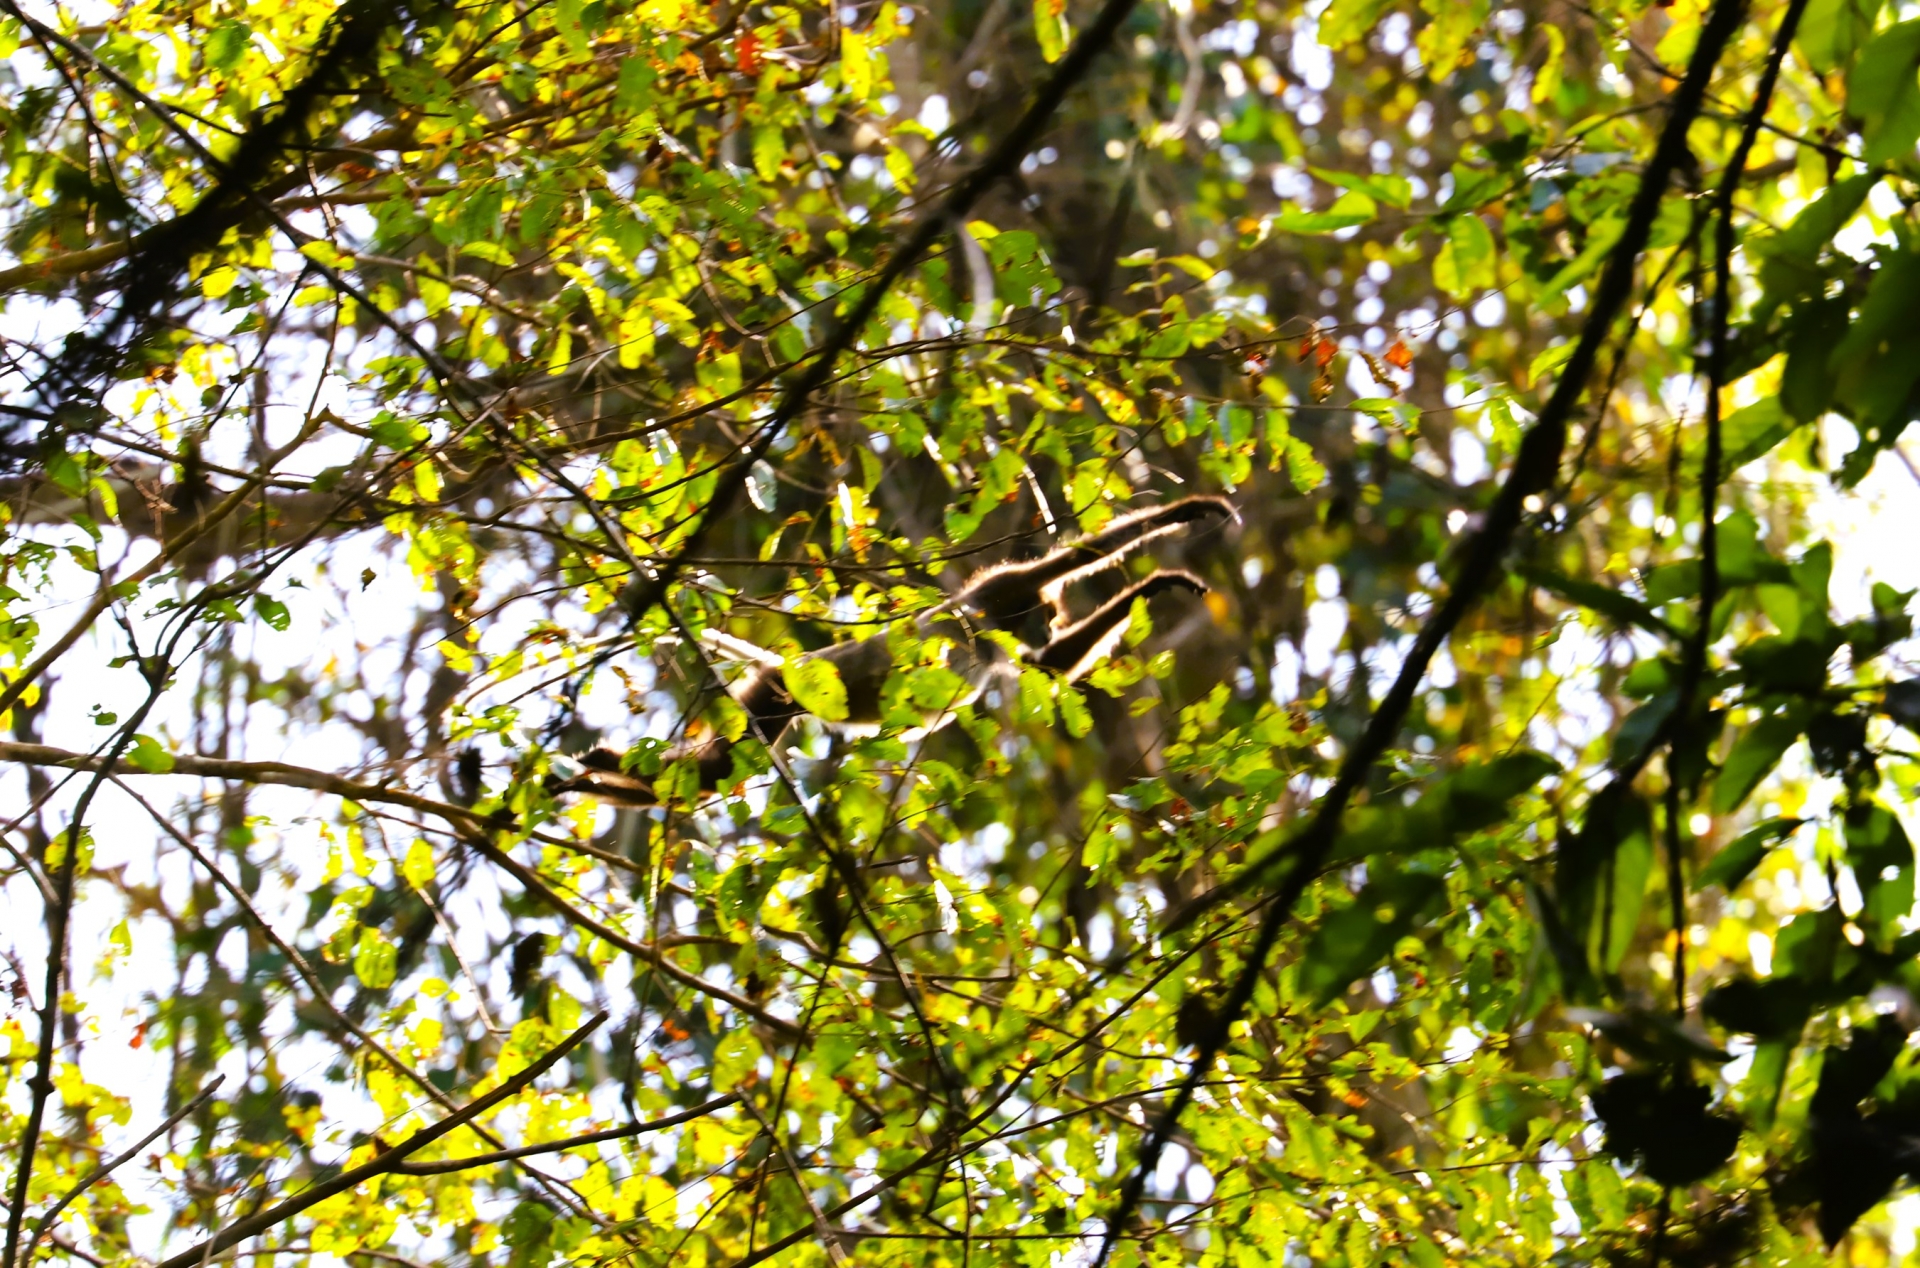 Hình ảnh vọoc chà vá chân đen - một loài linh trưởng quý hiếm trong Sách đỏ được phóng vi ghi lại khi tham gia chuyến trải nghiệm đi bộ xuyên rừng tại VQG Cát Tiên